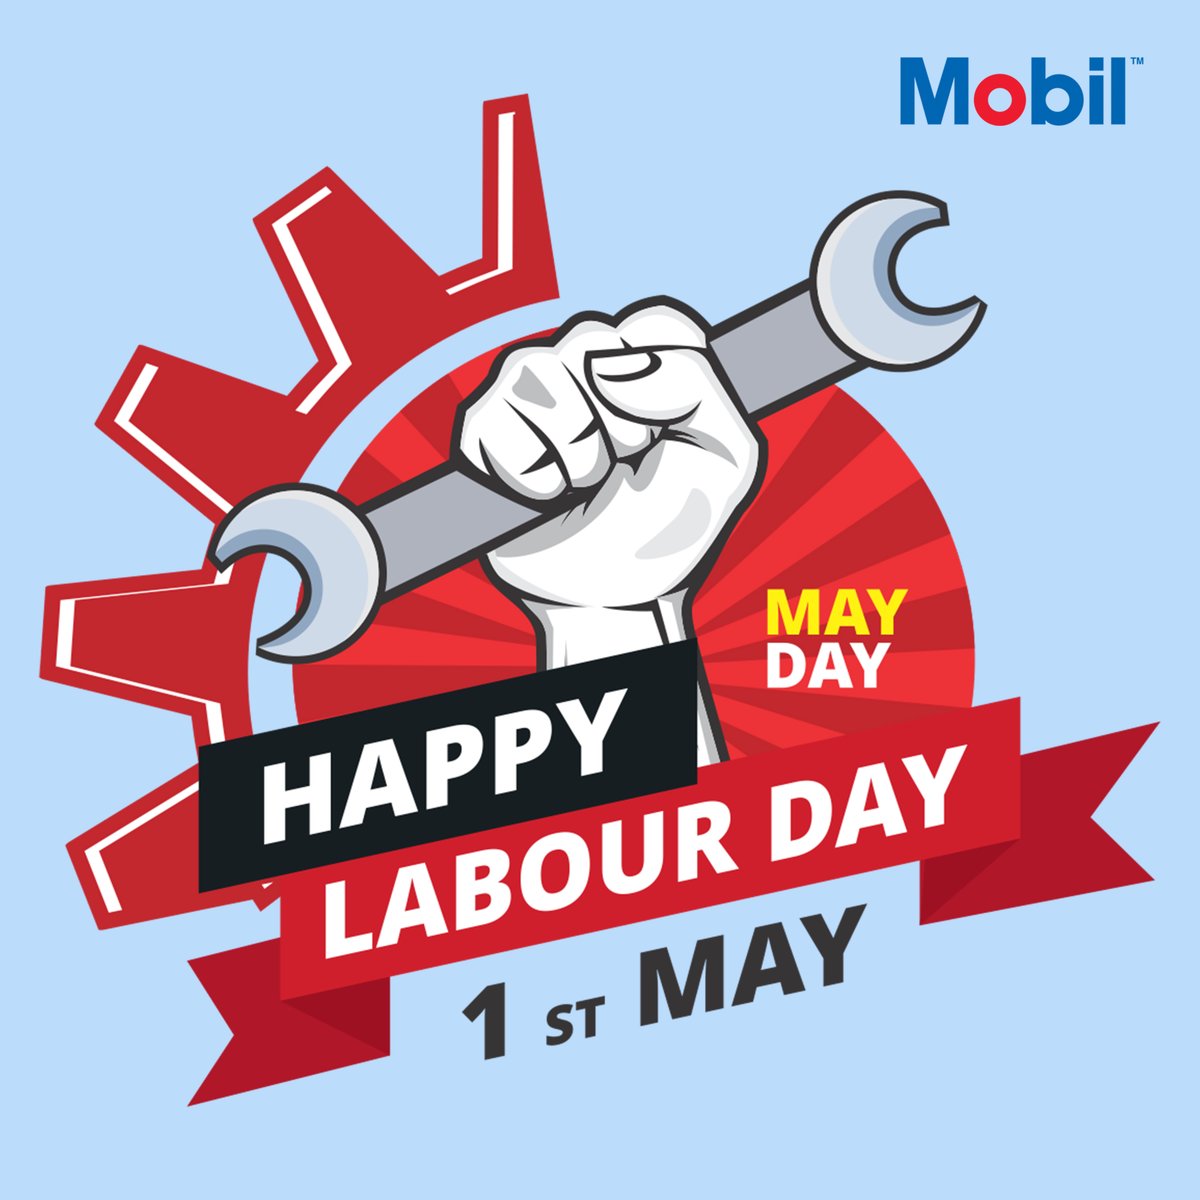 Selamat hari buruh internasional untuk para pekerja dan buruh di seluruh dunia. Tetap semangat.

Follow IG @mobillubricants_pkn
Follow IG @pknmarketing

#laborday
#hariburuh
#exxonmobil